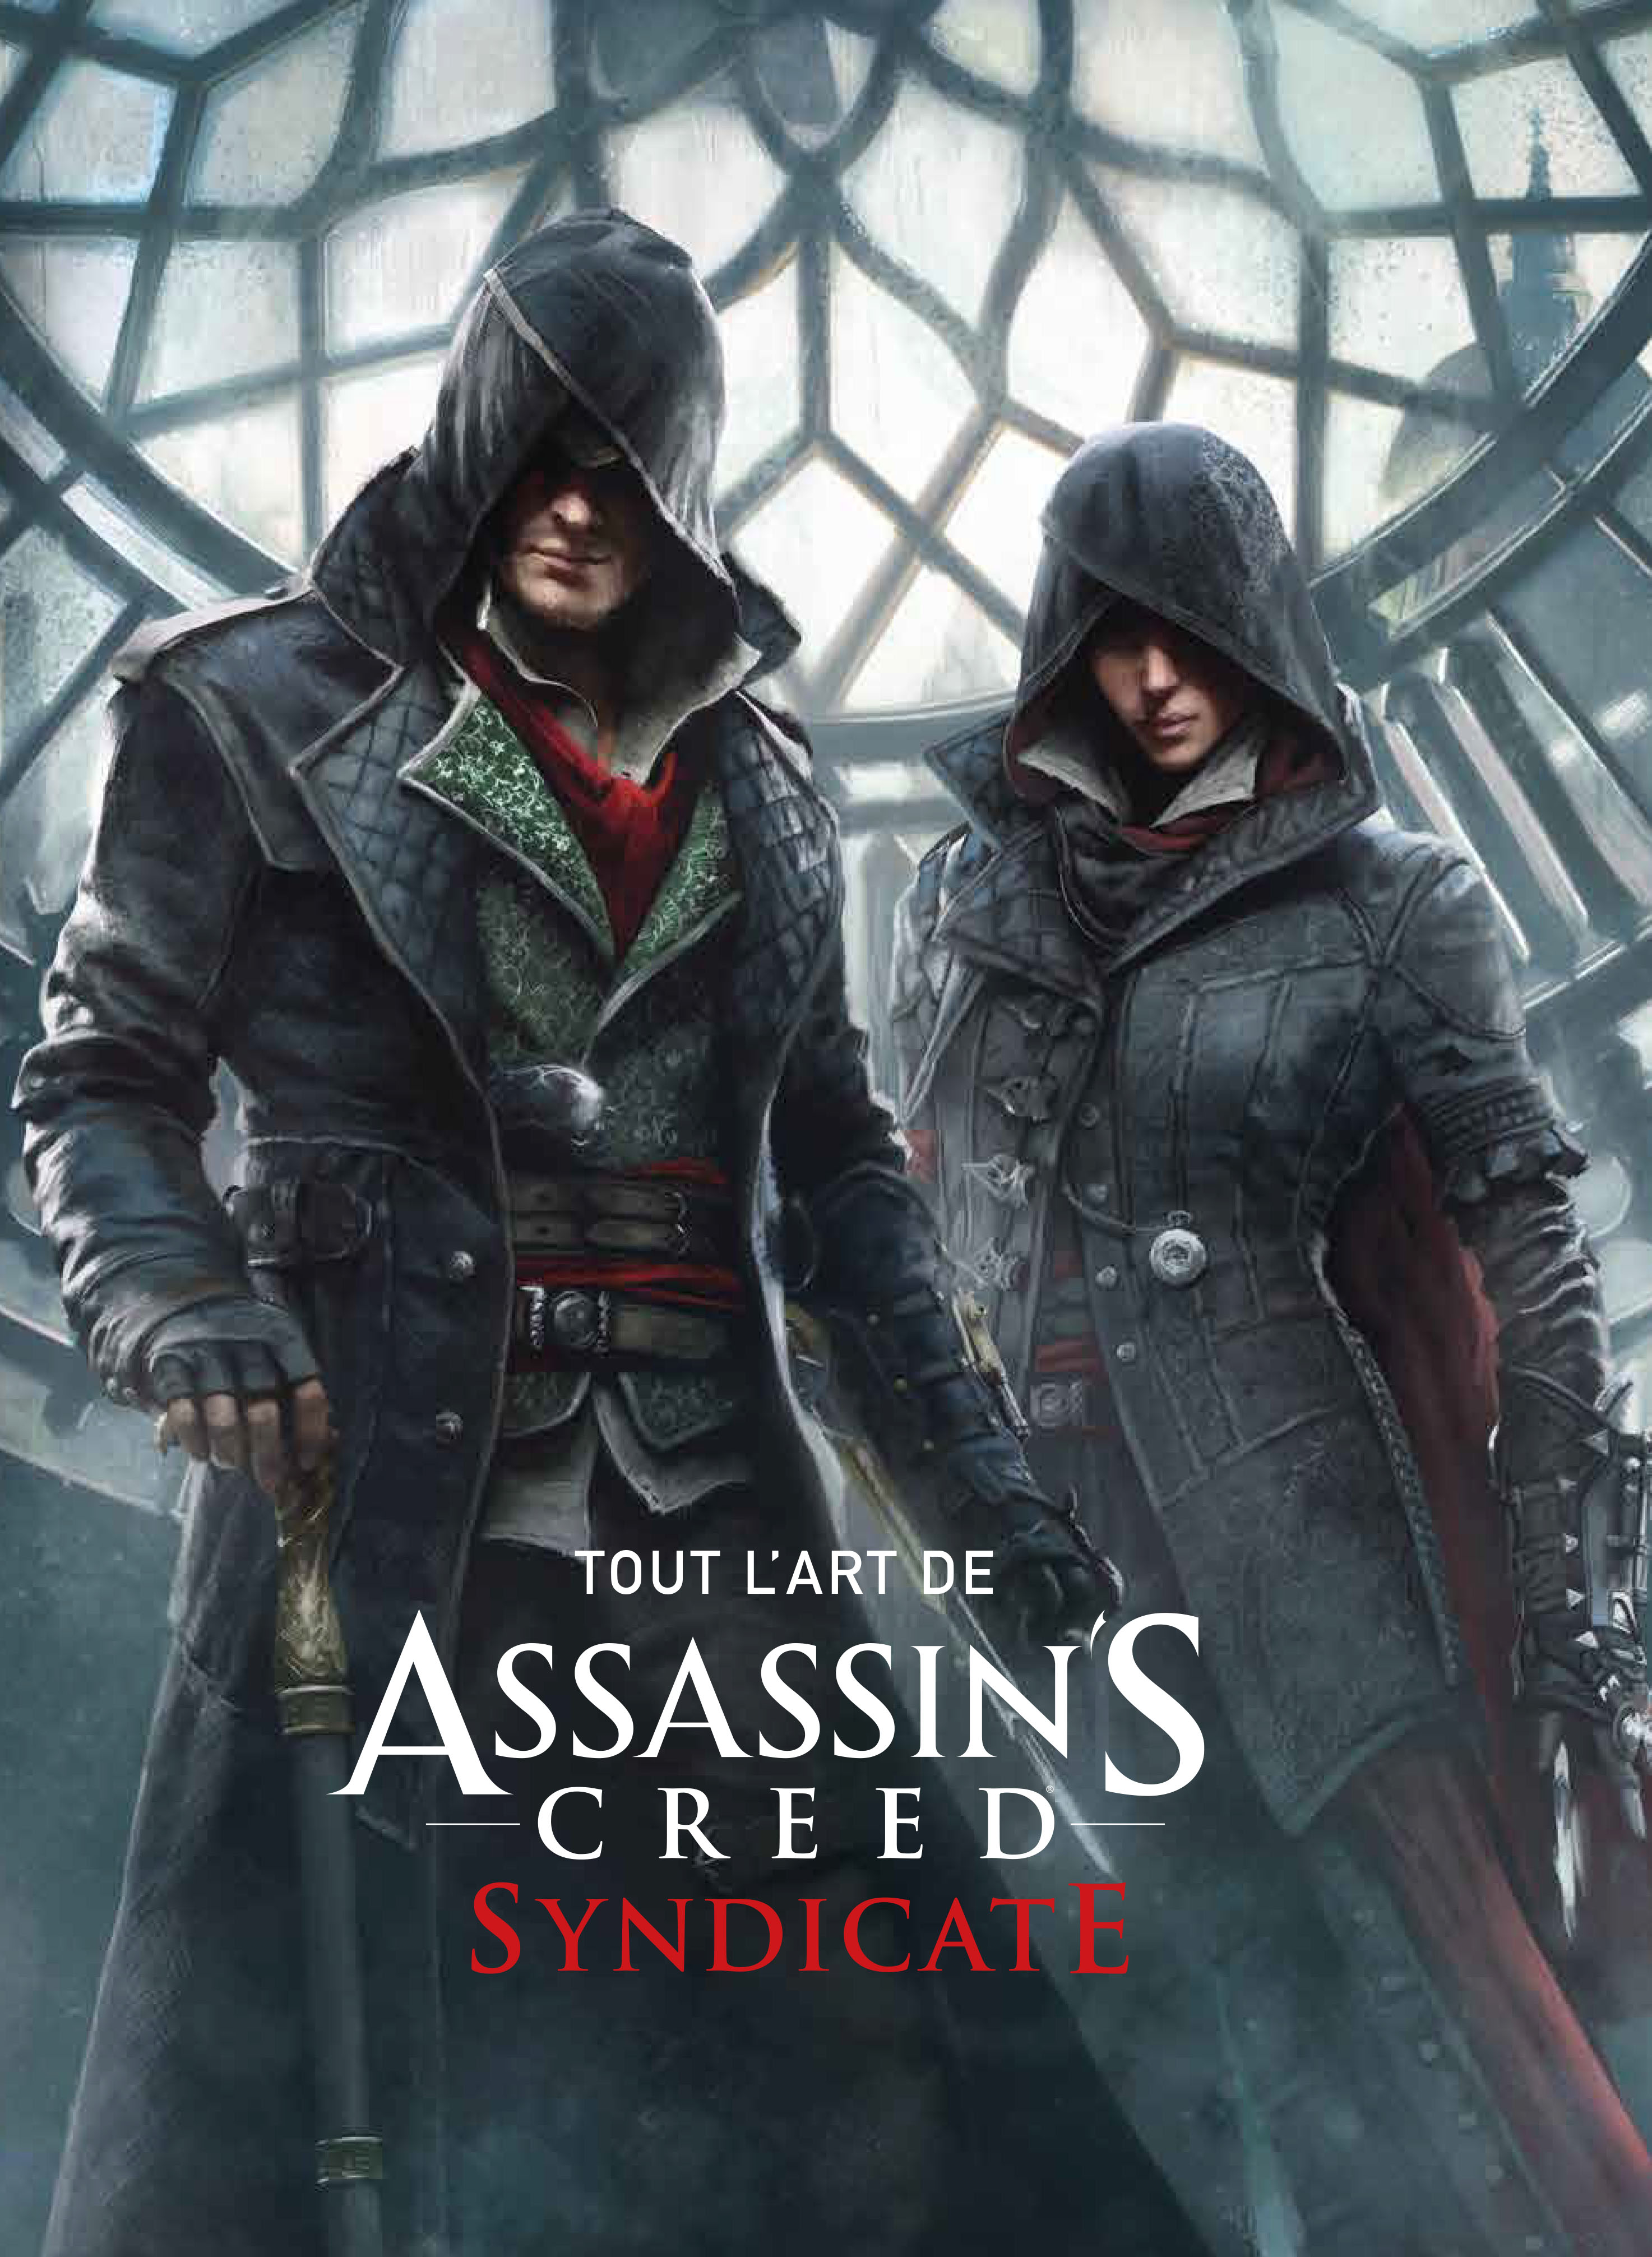 Tout l'art d'Assassin's Creed Syndicate – Tout l'art d'Assassin's Creed Syndicate - couv